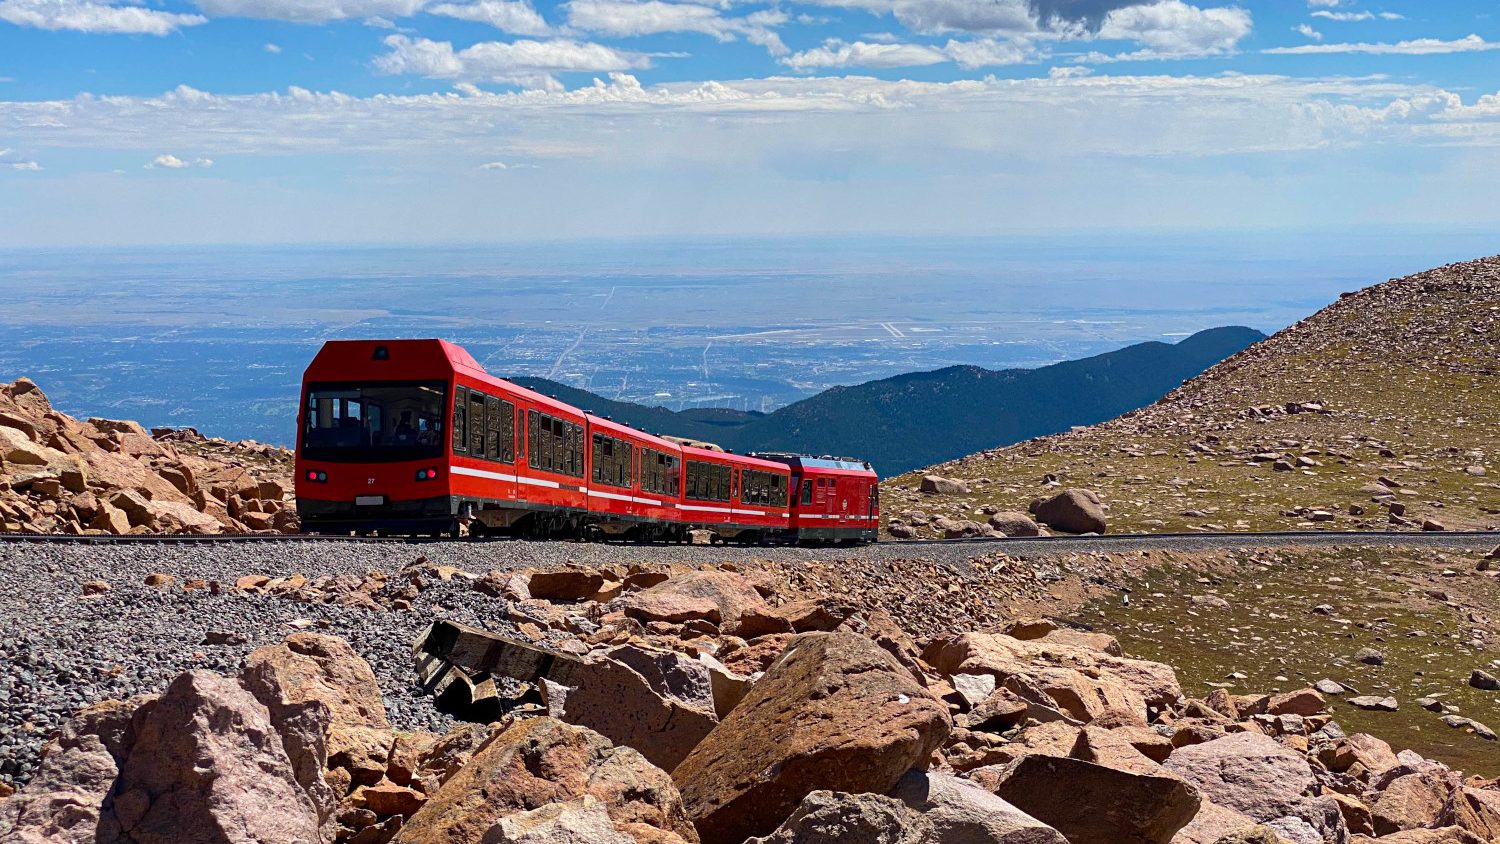 Zug der Cog Railway bei sonnigem Wetter auf dem Weg auf den Pikes Peak in Colorado